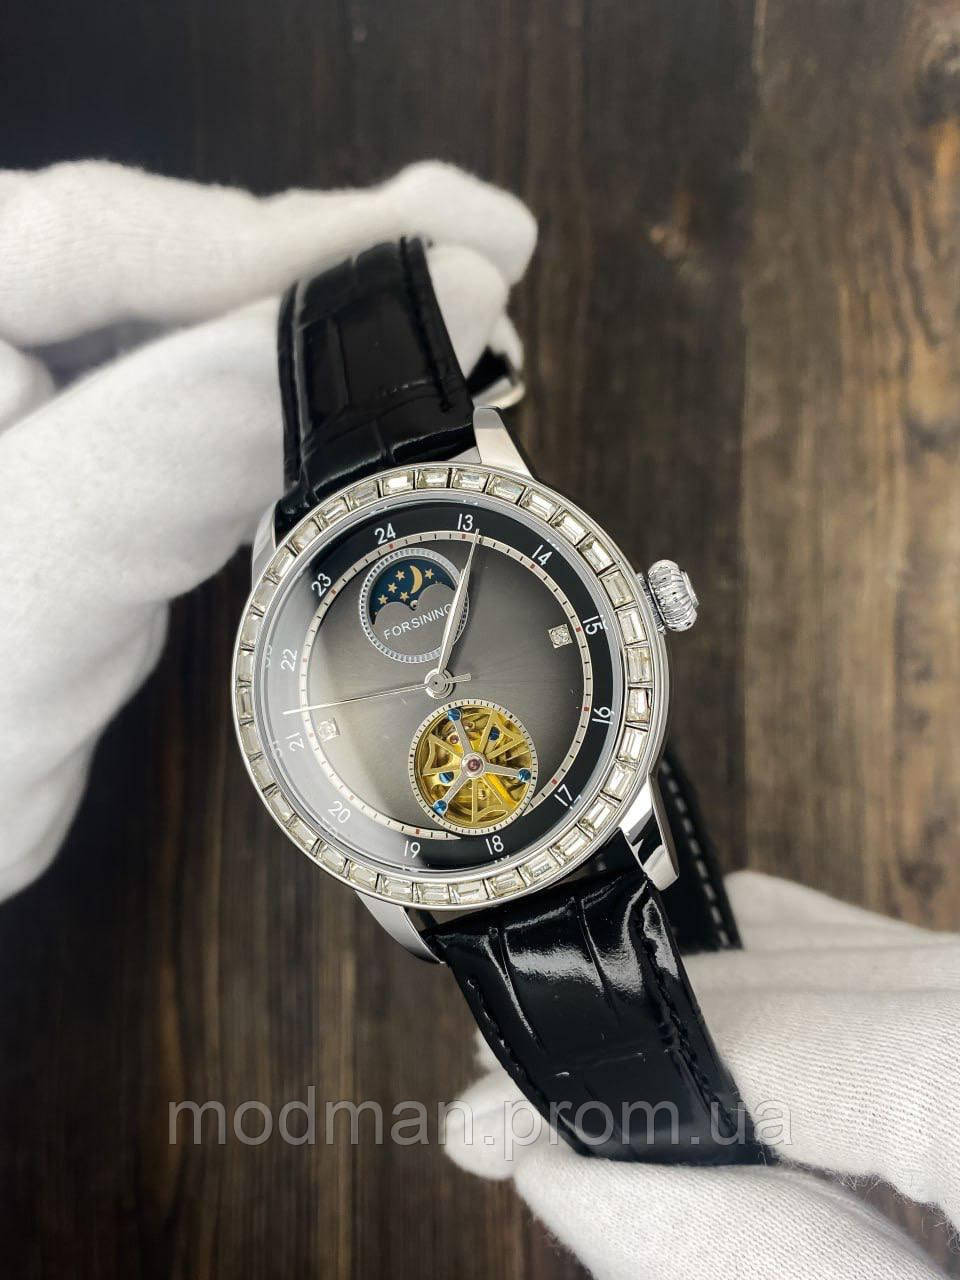 Годинник на руку з шкіряним ремінцем Форсайнін Механічний годинник Чоловічий годинник Форсінінг Наручний годинник Forsining 8257